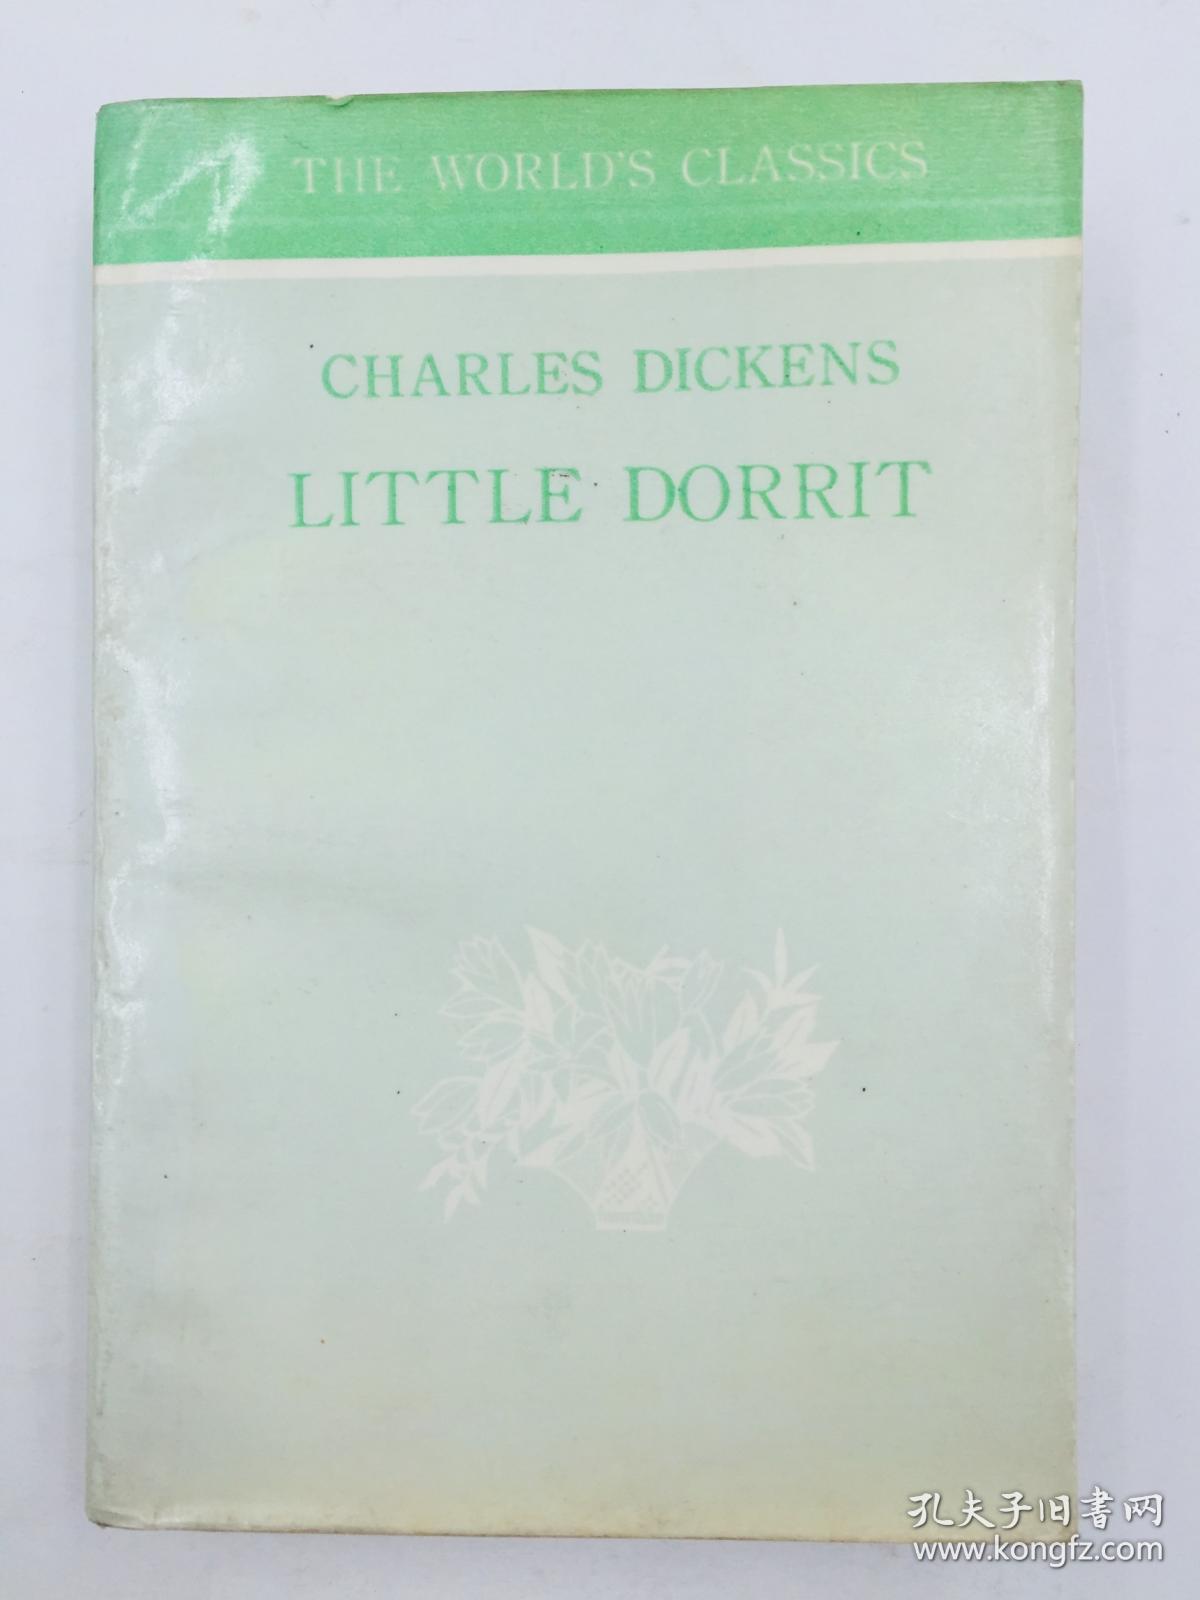 Little Dorrit (World's Classics S.)